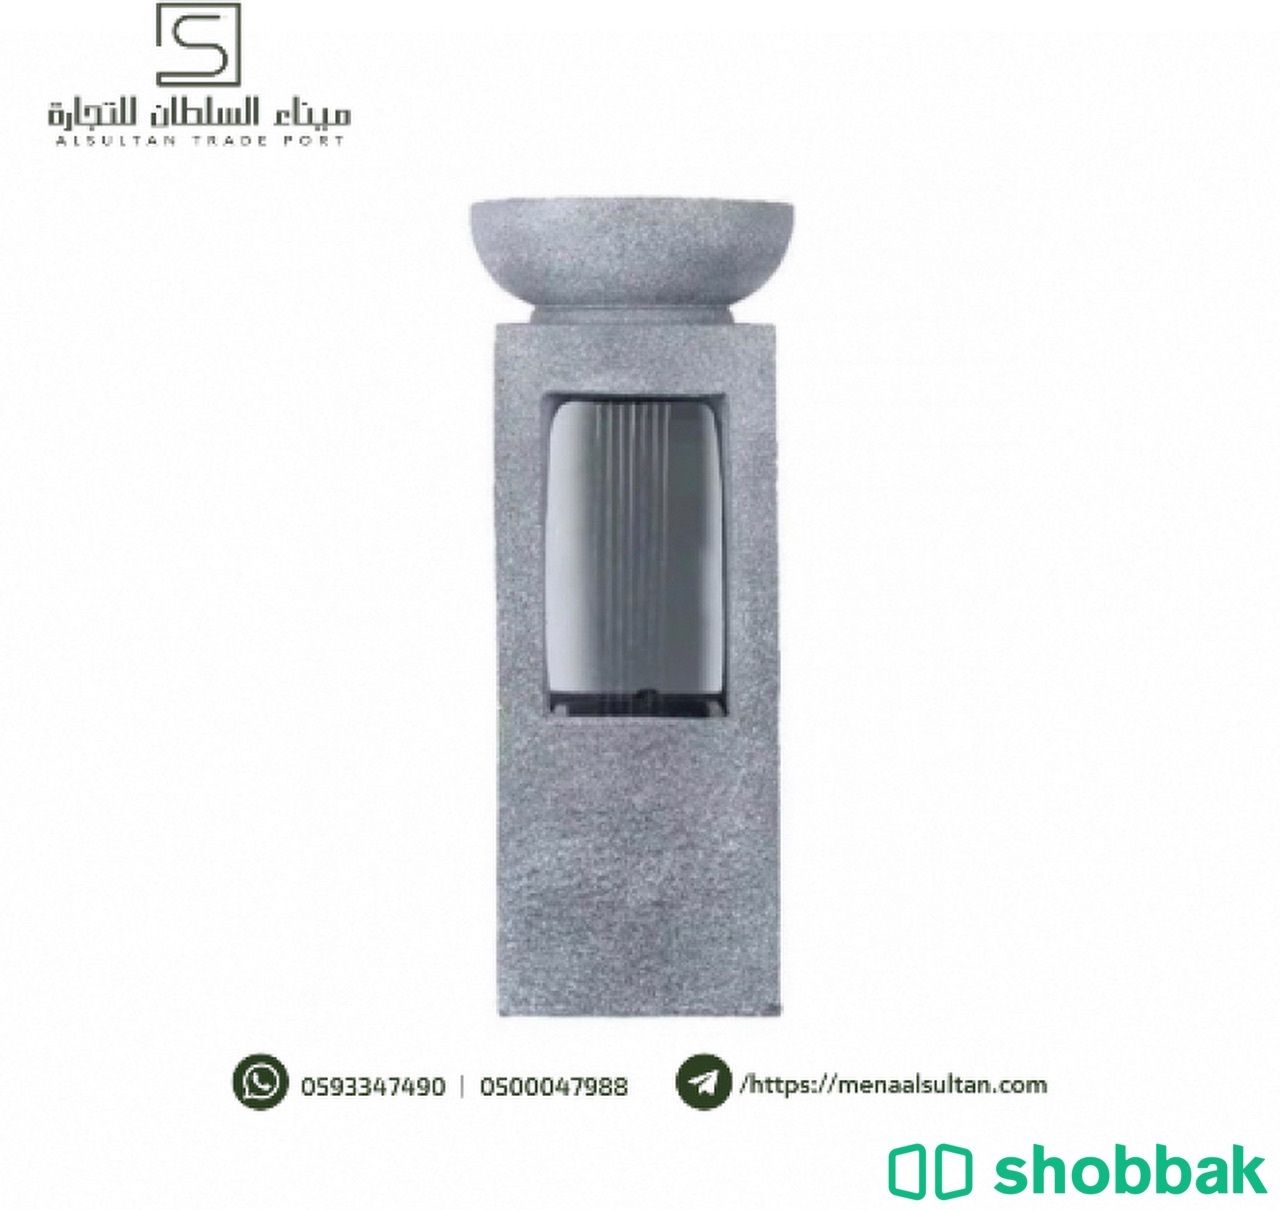 نافورة العامود مع إضاءة LED. Shobbak Saudi Arabia